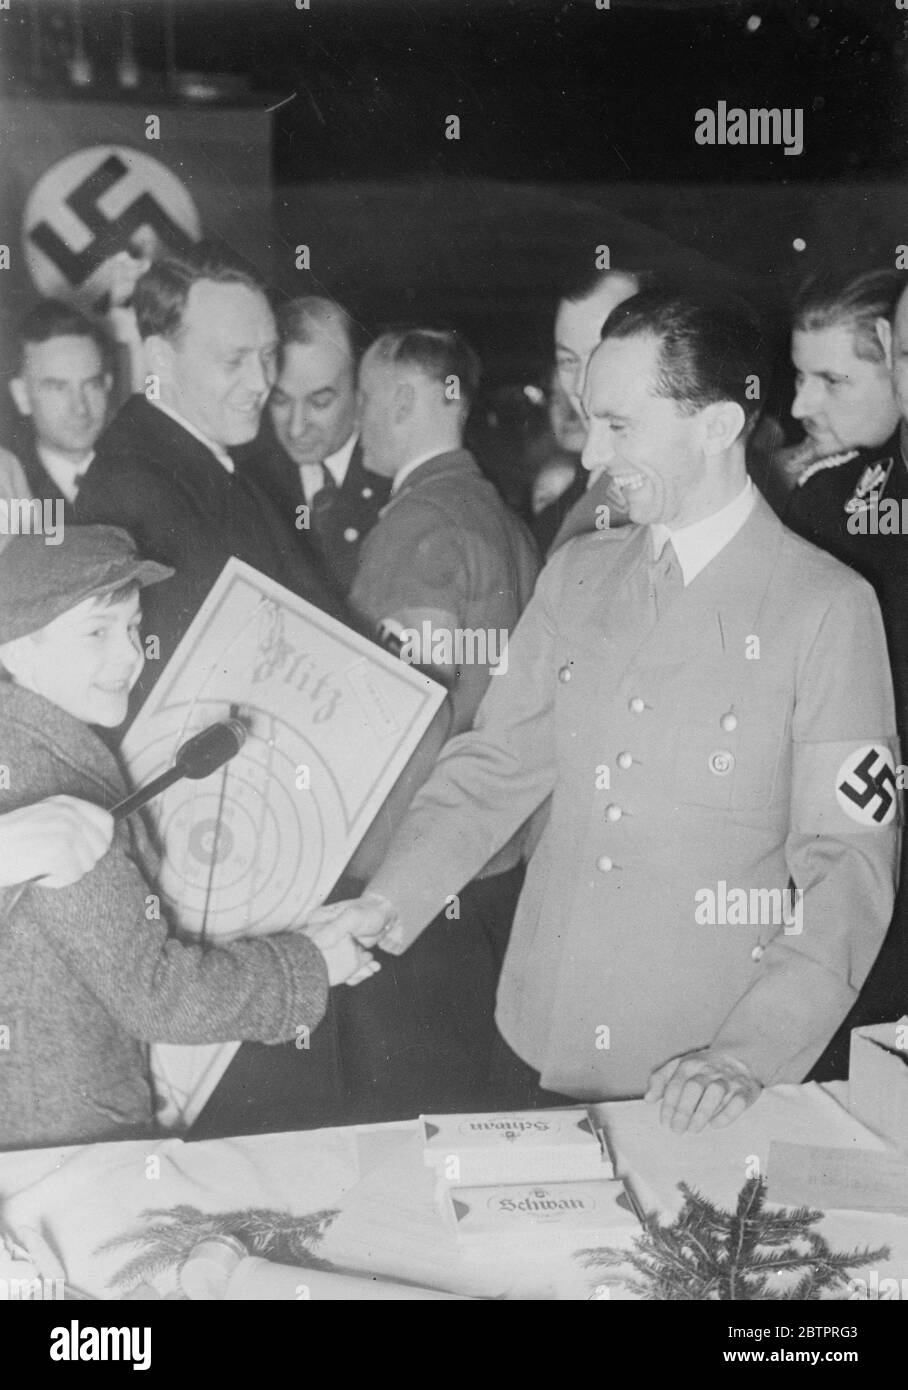 Dr Goebbel'-Babbo Natale. Il Dr. Goebbels, Ministro della Propaganda nazista, sorride ampiamente mentre scuote le mani con un giovane ospite dopo aver presentato un regalo di Natale a Berlino. I regali sono stati distribuiti a 150,000 bambini a Berlino nel quadro della campagna di aiuto invernale. 25 dicembre 1937 Foto Stock